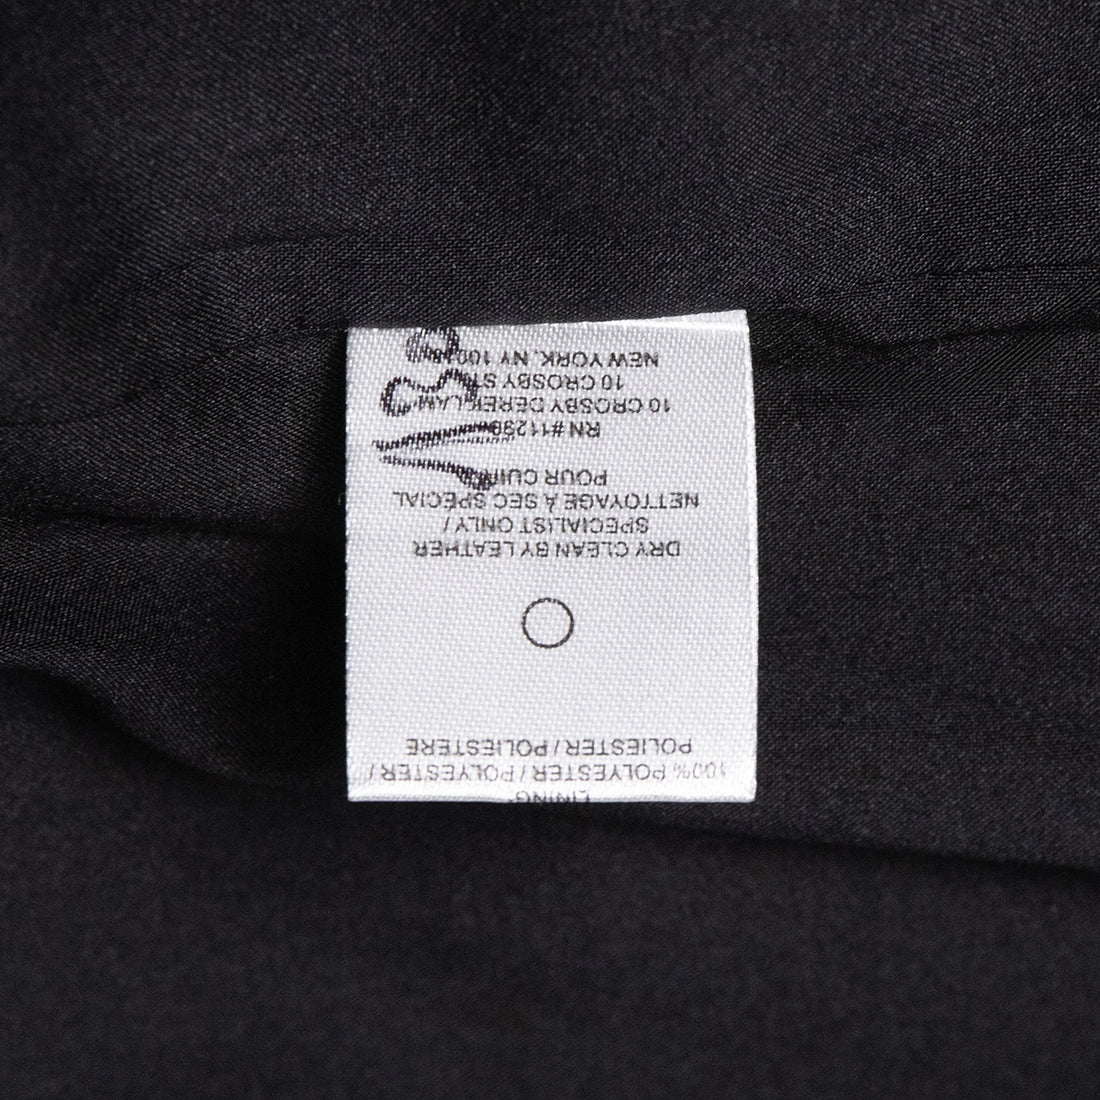 Derek Lam embroidered cotton blazer with leather details